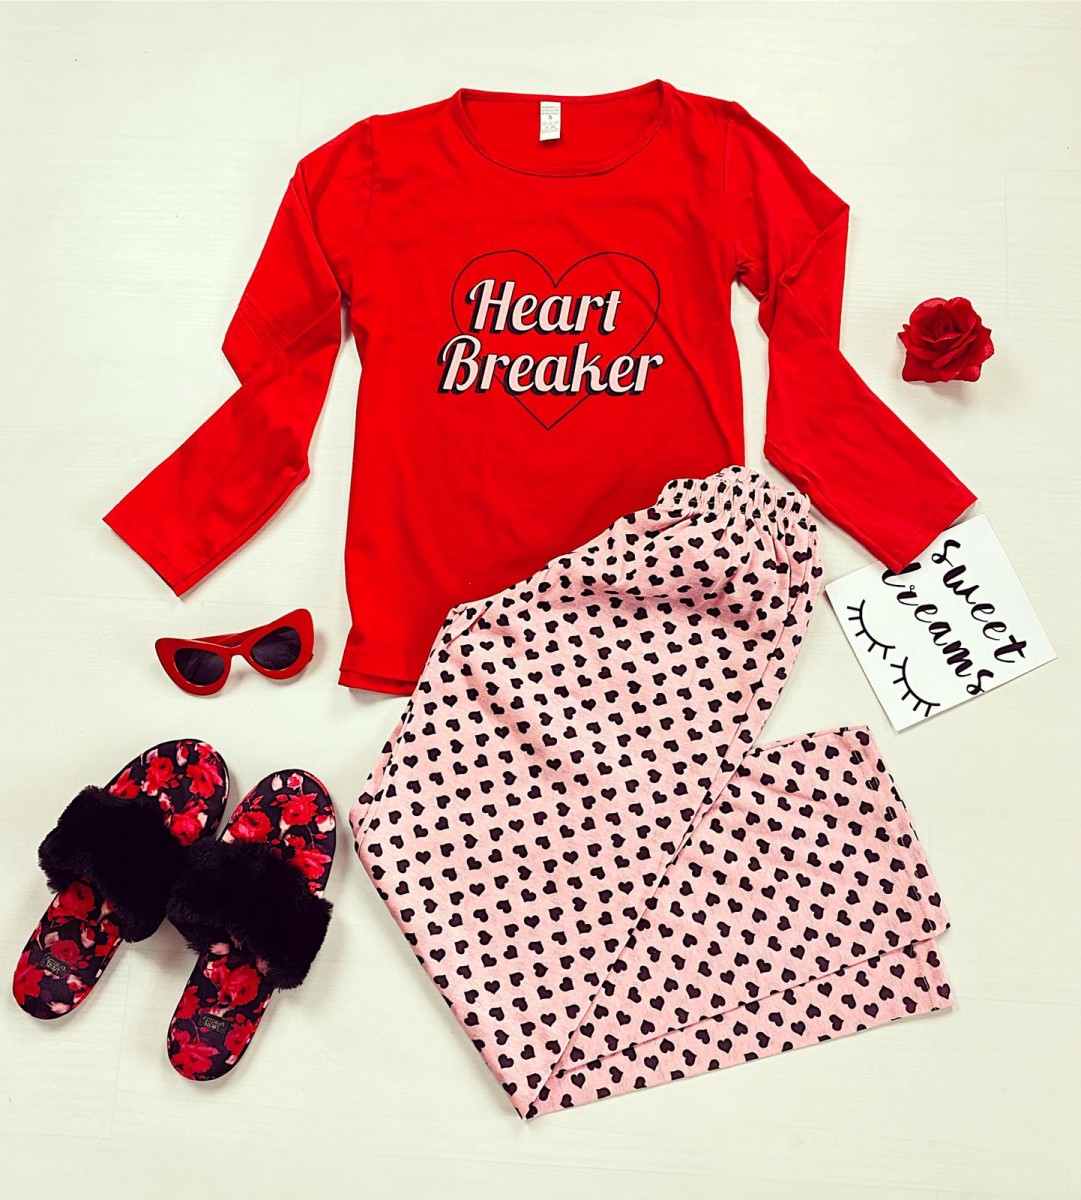 Pijama dama din bumbac ieftina cu pantaloni roz si bluza cu maneca lunga rosie cu imprimeu Heart Breaker